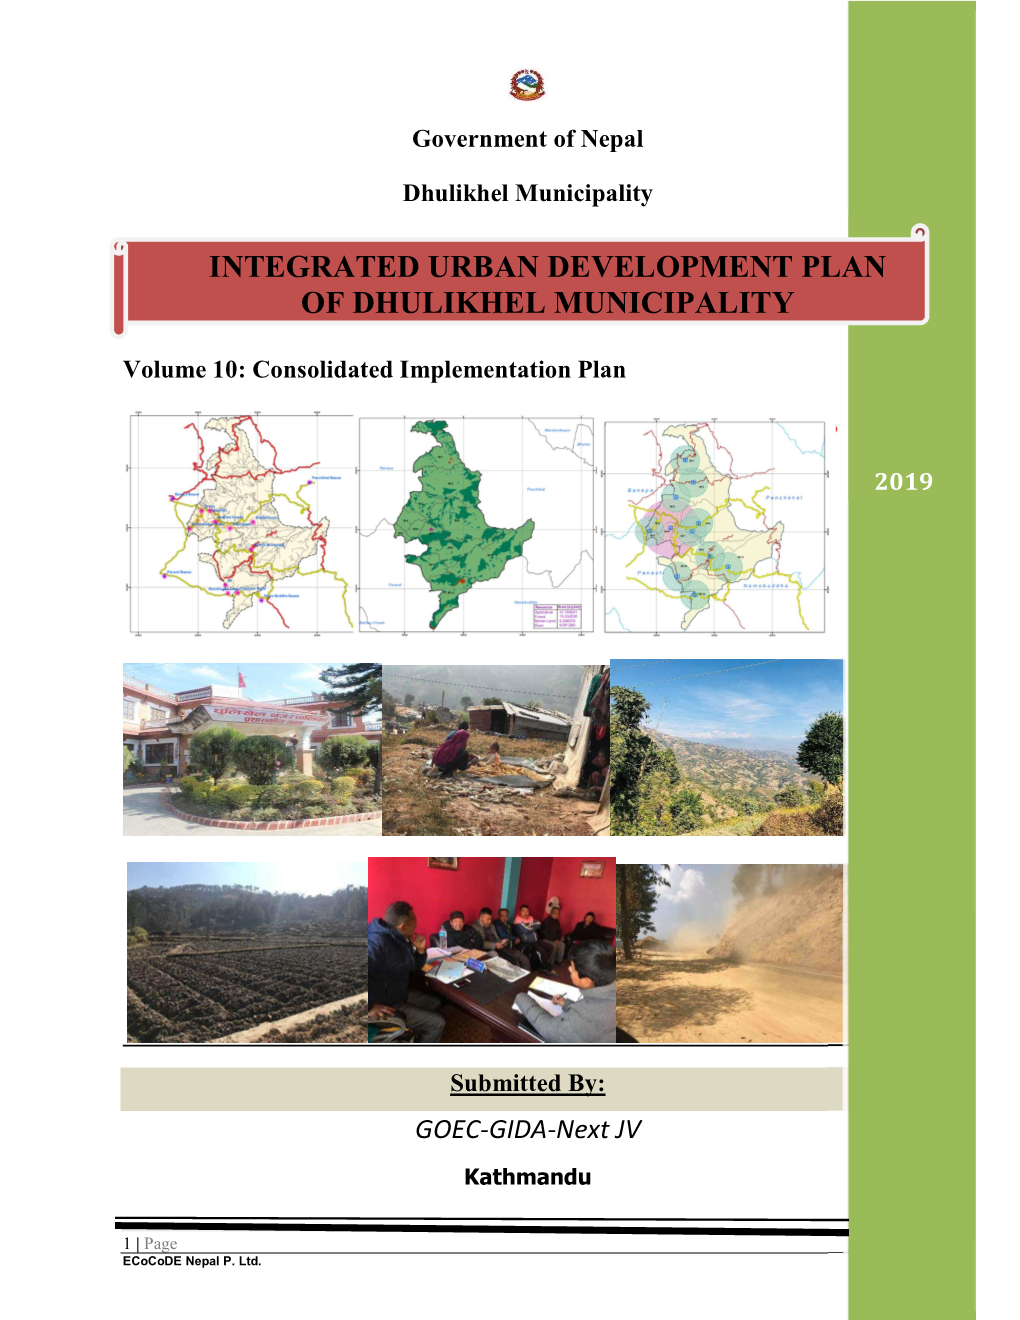 Integrated Urban Development Plan of Dhulikhel Municipality 2019